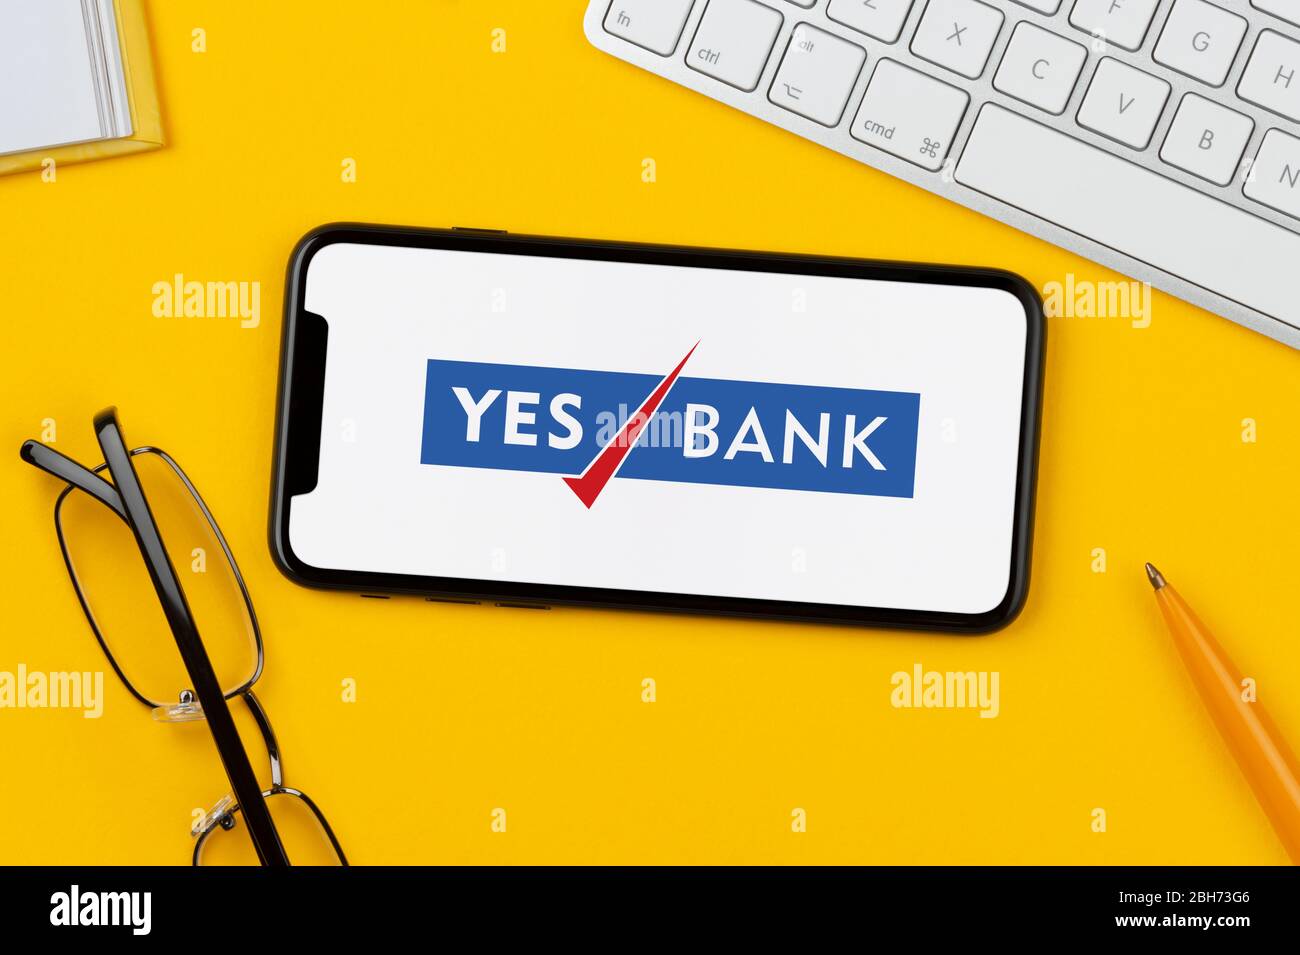 Un smartphone affichant le logo Yes Bank repose sur un fond jaune avec un clavier, des lunettes, un stylo et un livre (usage éditorial uniquement). Banque D'Images